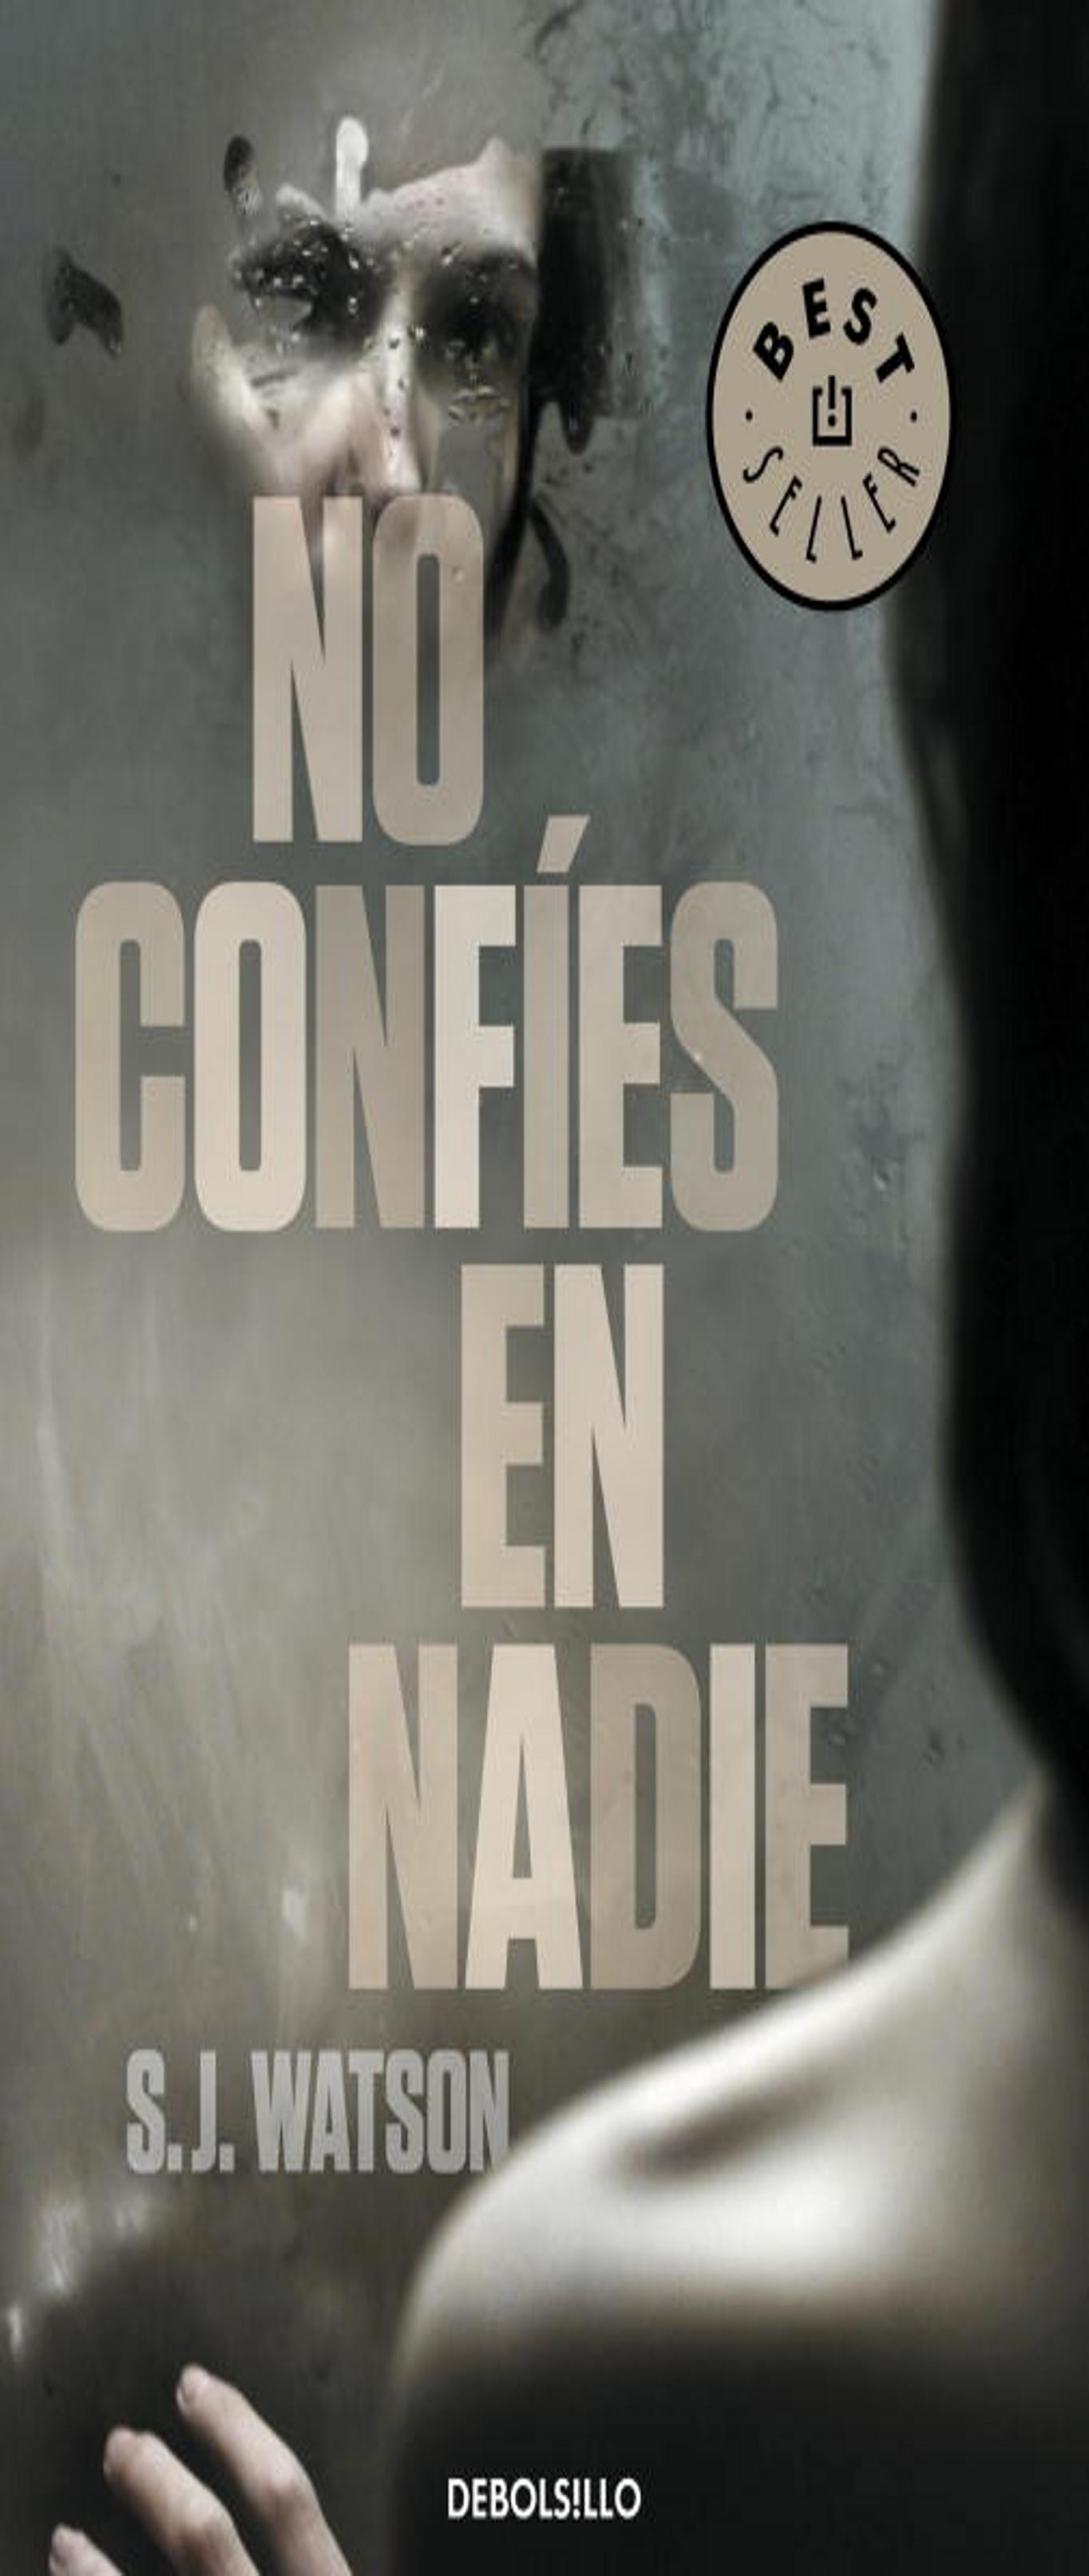 NO CONFES EN NADIE